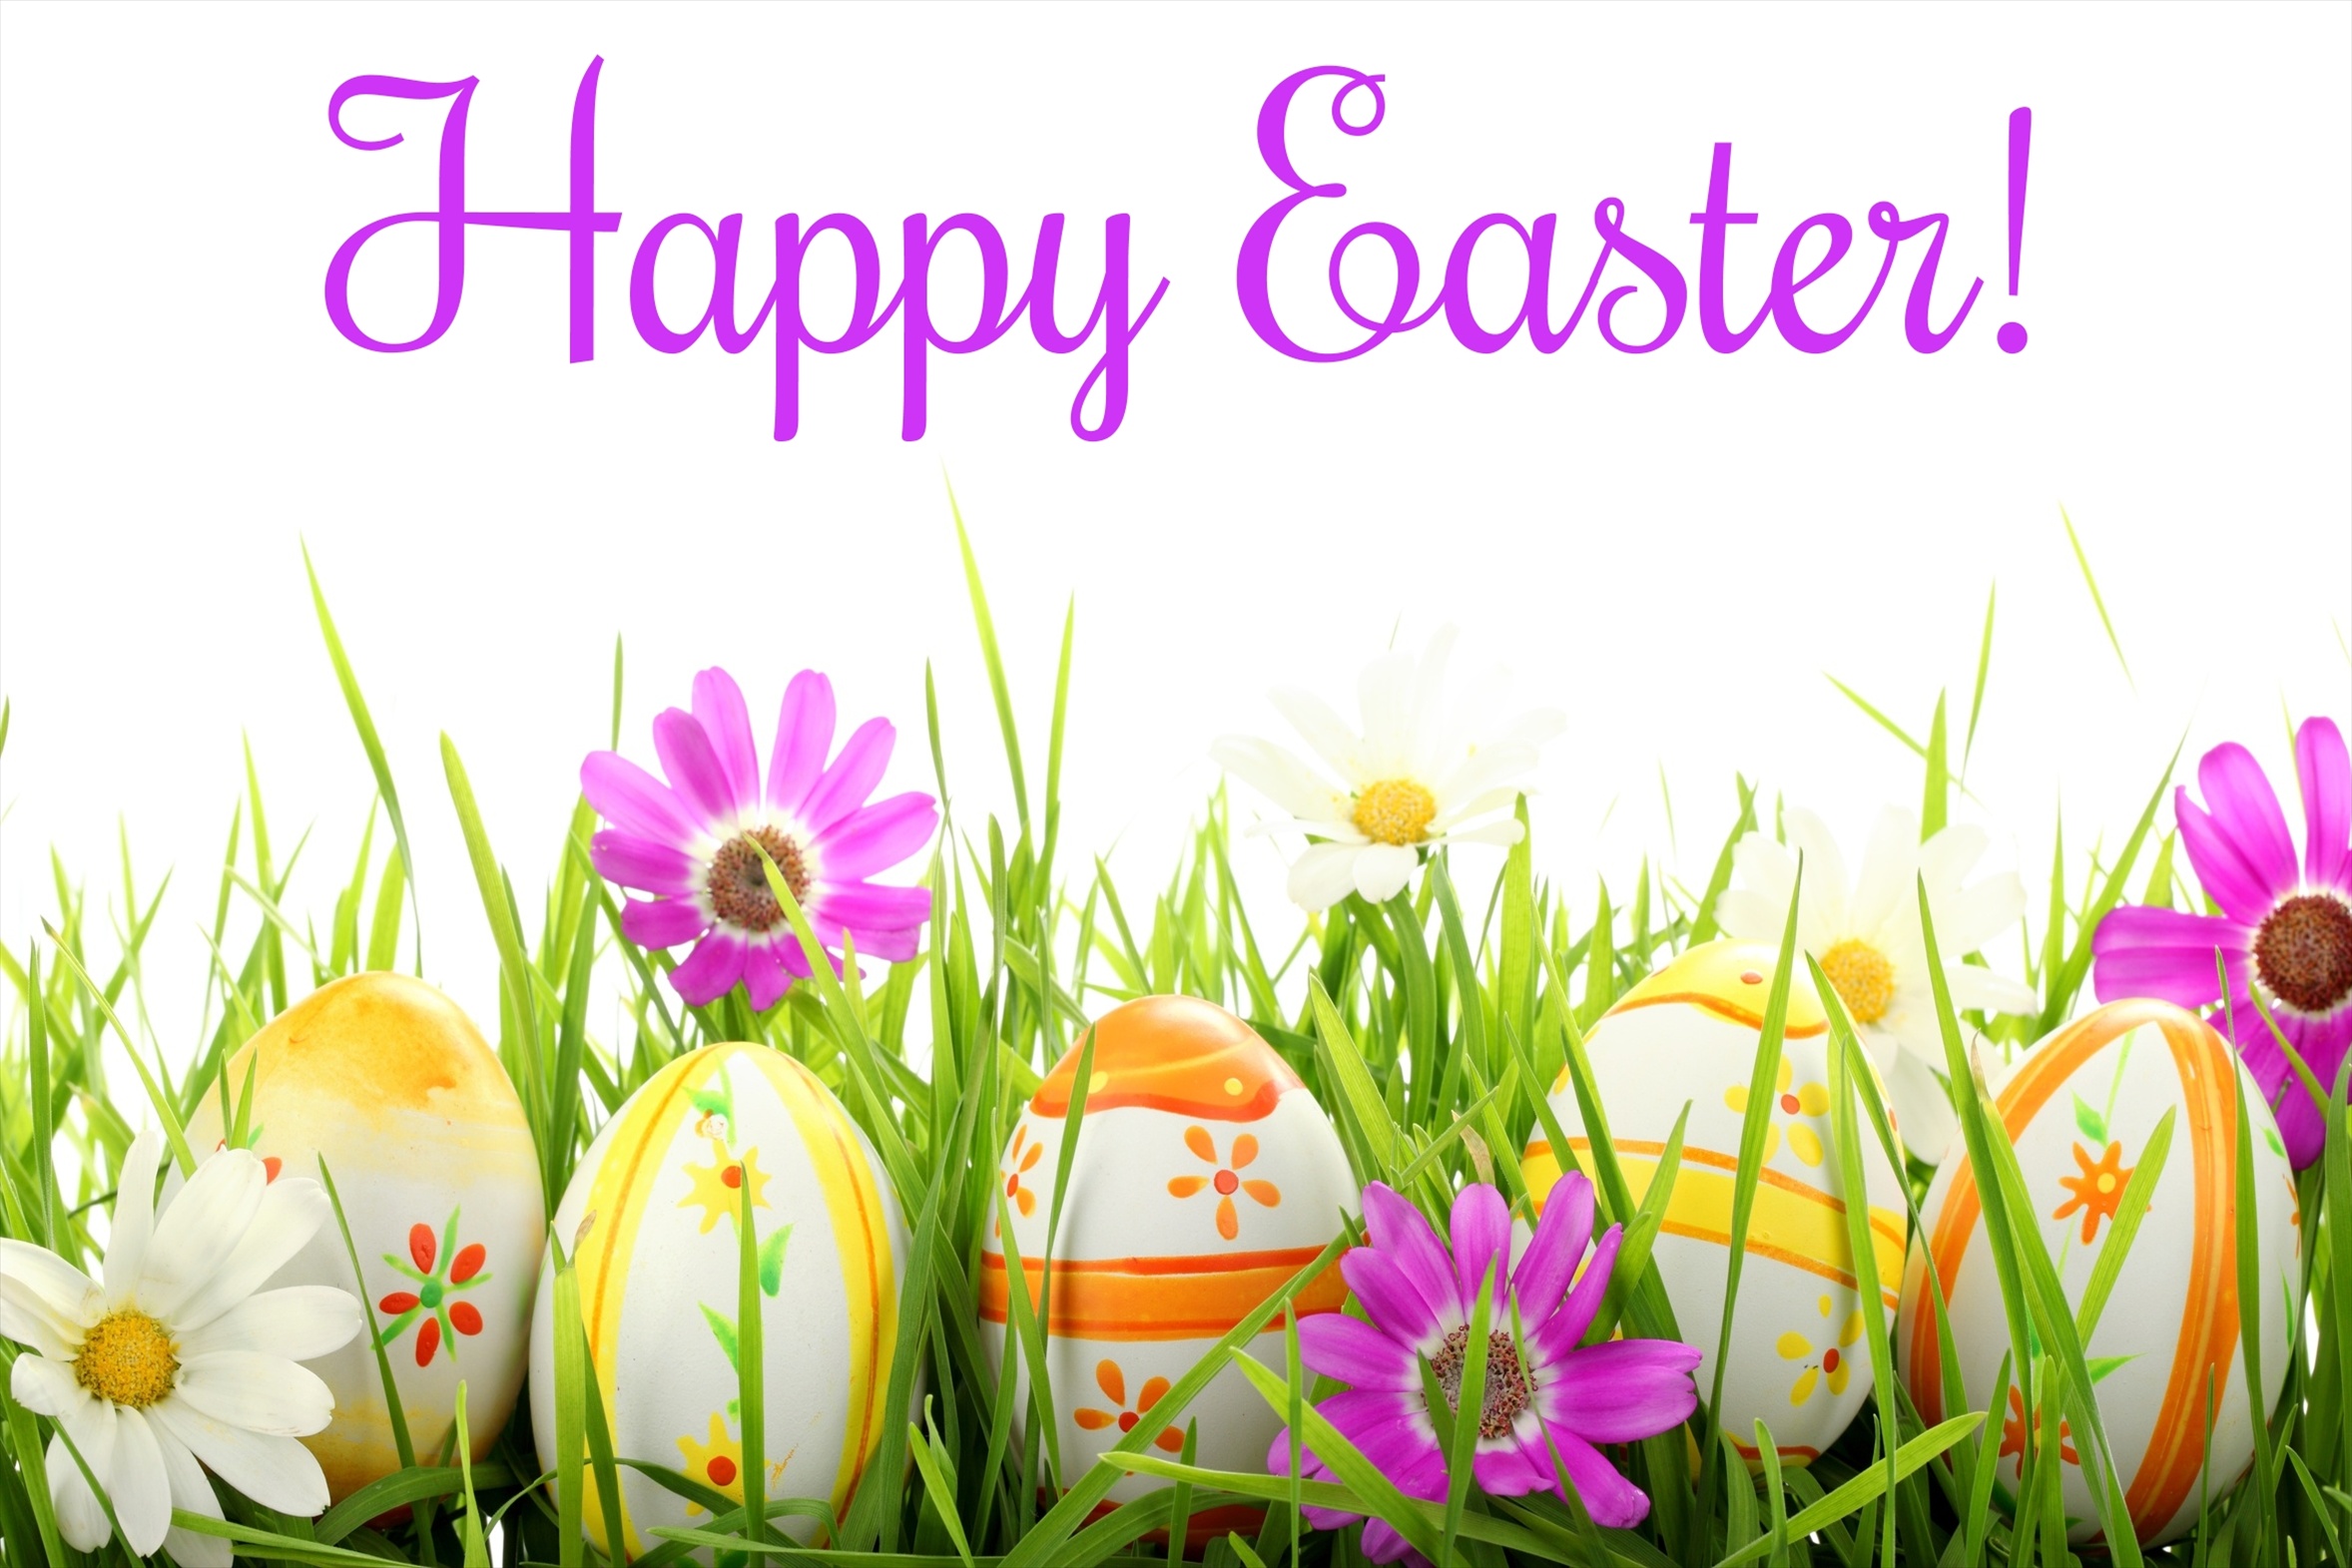 Happy-Easter-All-My-Fans-happy-easter-all-my-fans-34039483-2356-1571.jpg